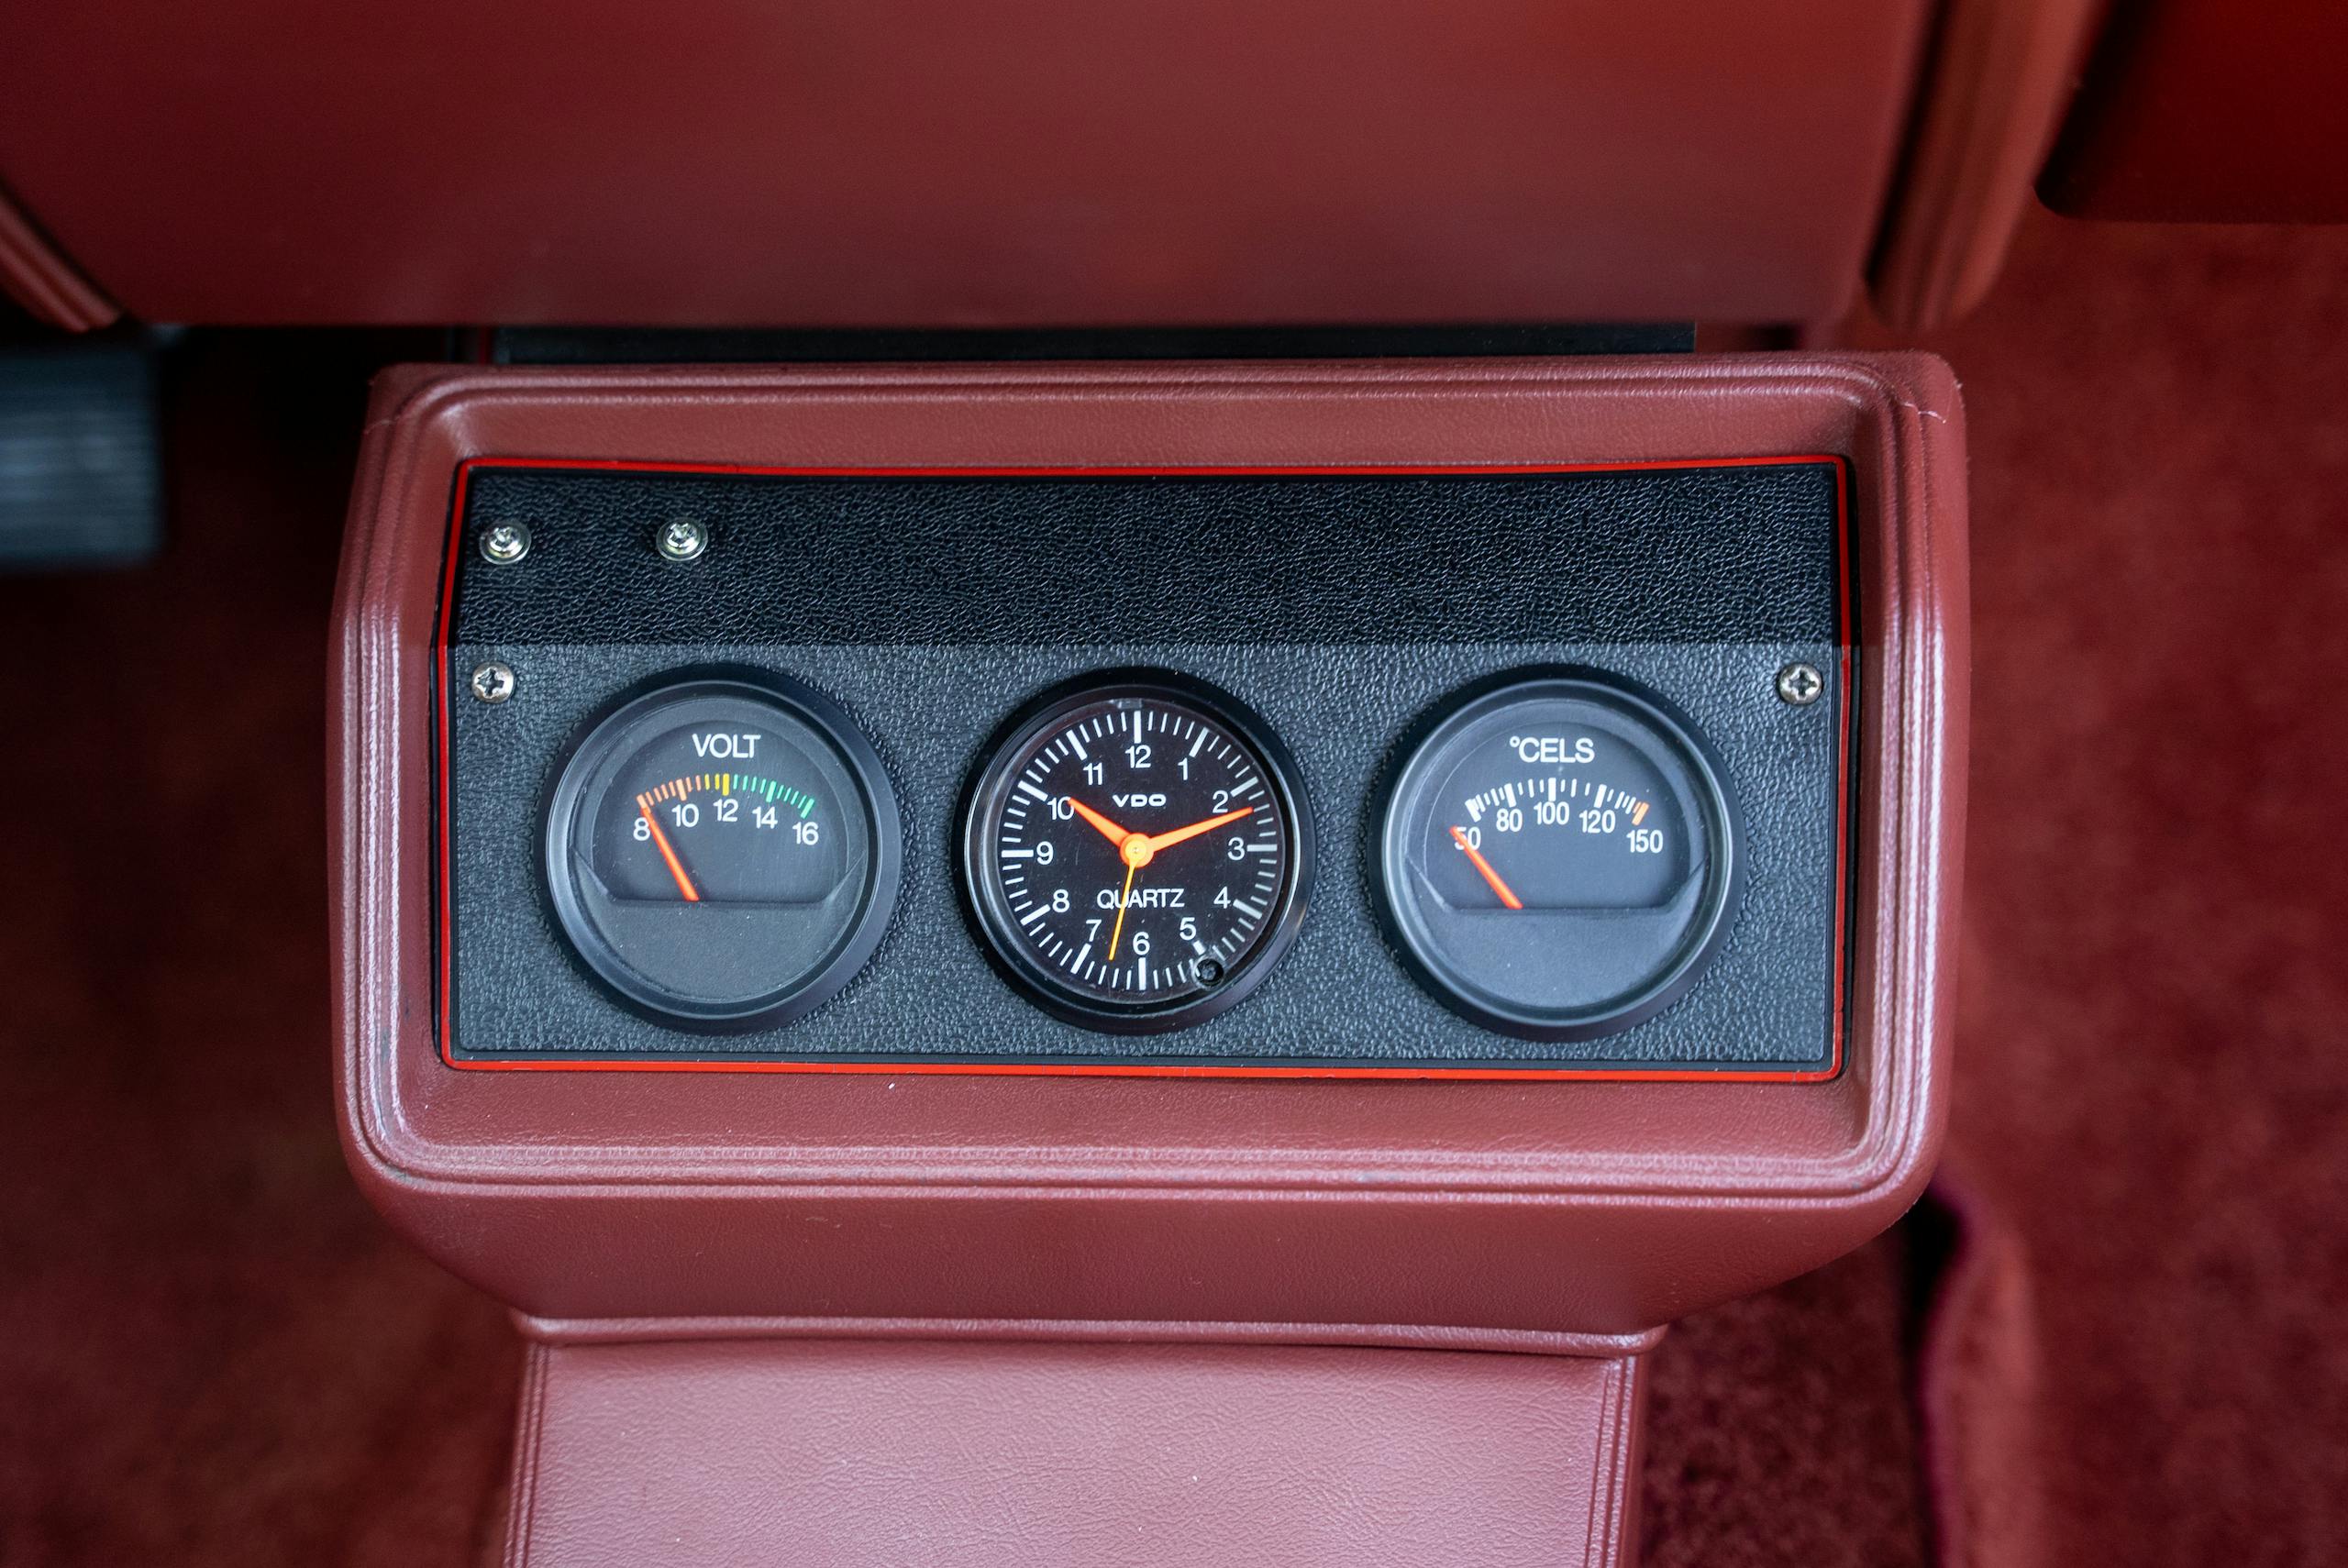 1983 Volkswagen Rabbit GTI Callaway hot hatch interior gauges detail